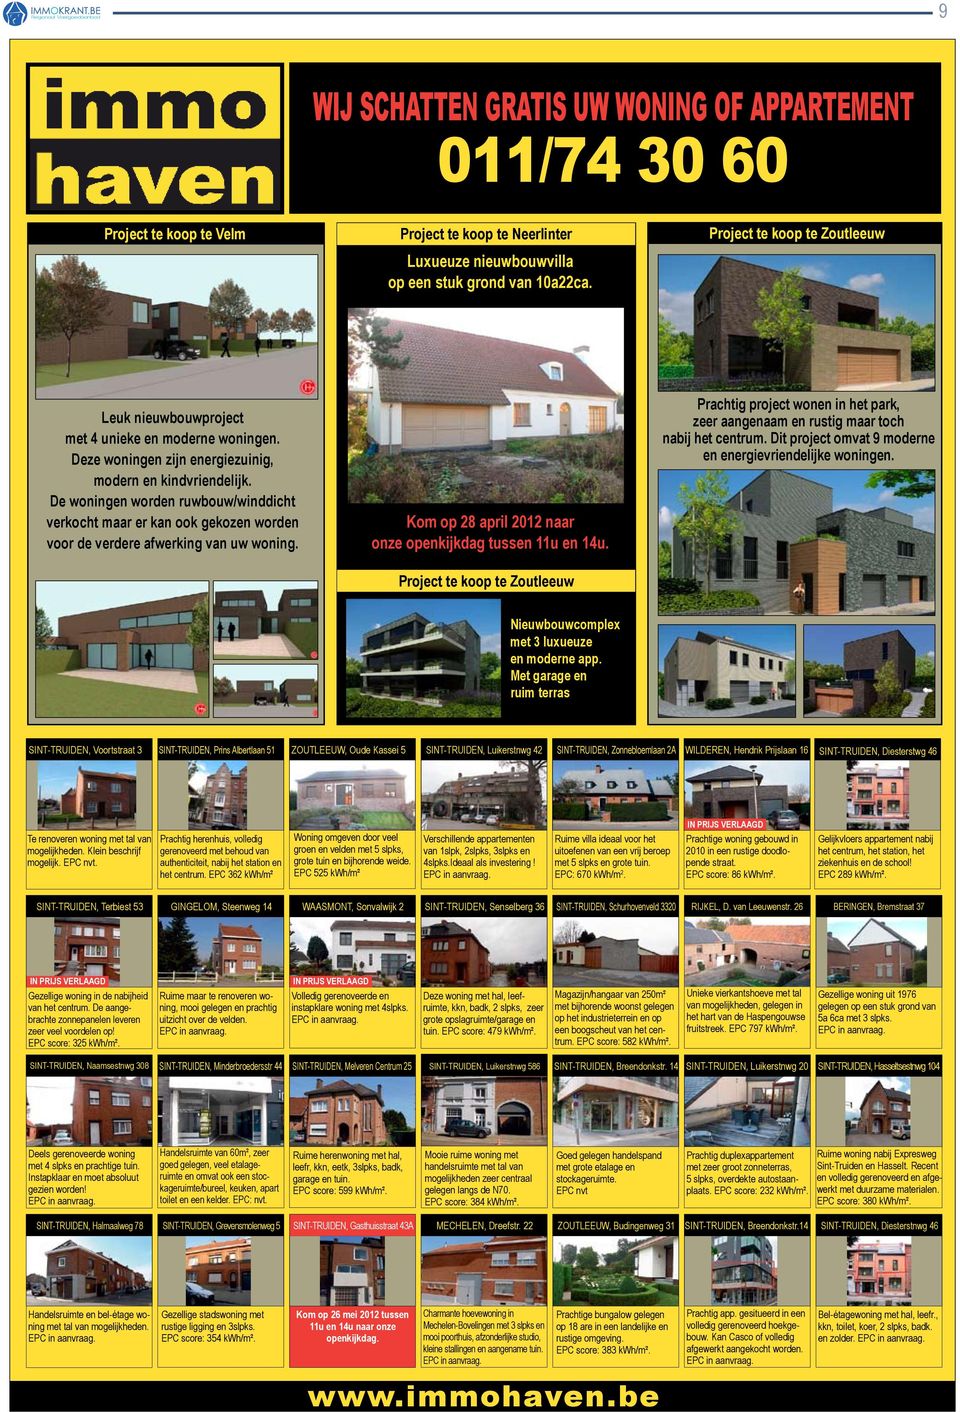 De woningen worden ruwbouw/winddicht verkocht maar er kan ook gekozen worden voor de verdere afwerking van uw woning. Kom op 28 april 2012 naar onze openkijkdag tussen 11u en 14u.